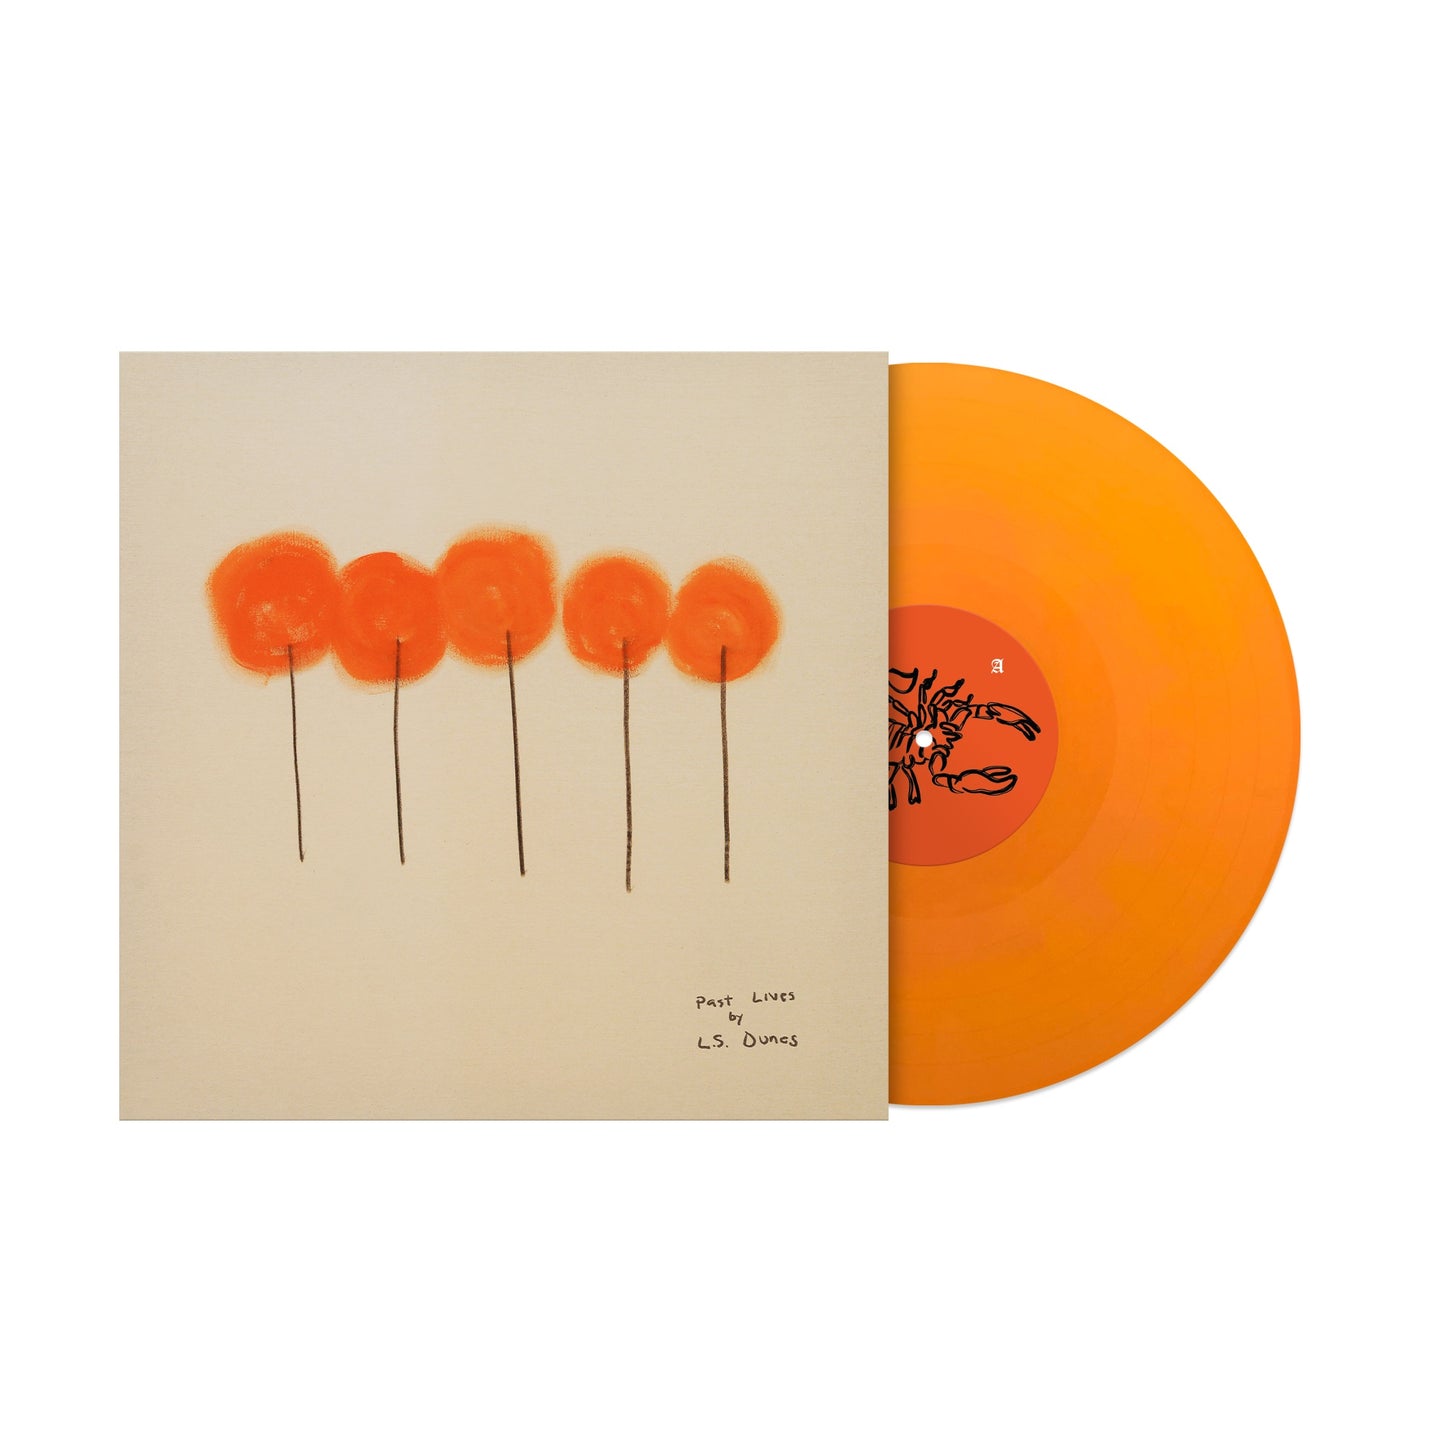 L.S. Dunes "Past Lives" LP (Tangerine vinyl)